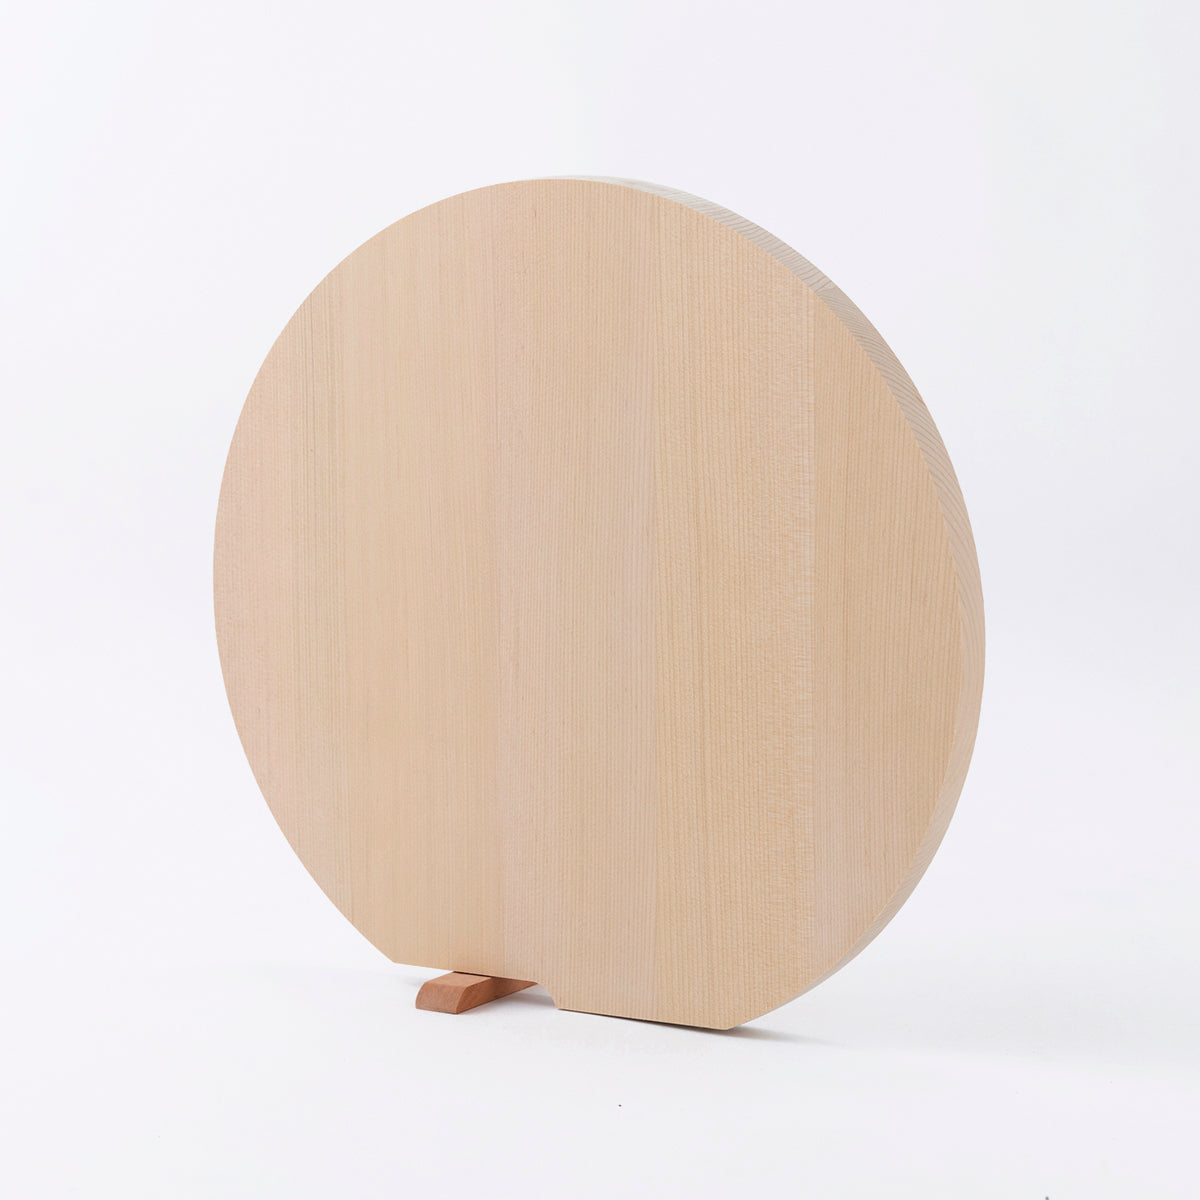 丸いまな板 青森ひばの丸まな板 スタンド付 L 丸型まな板 – 梅沢木材工芸社